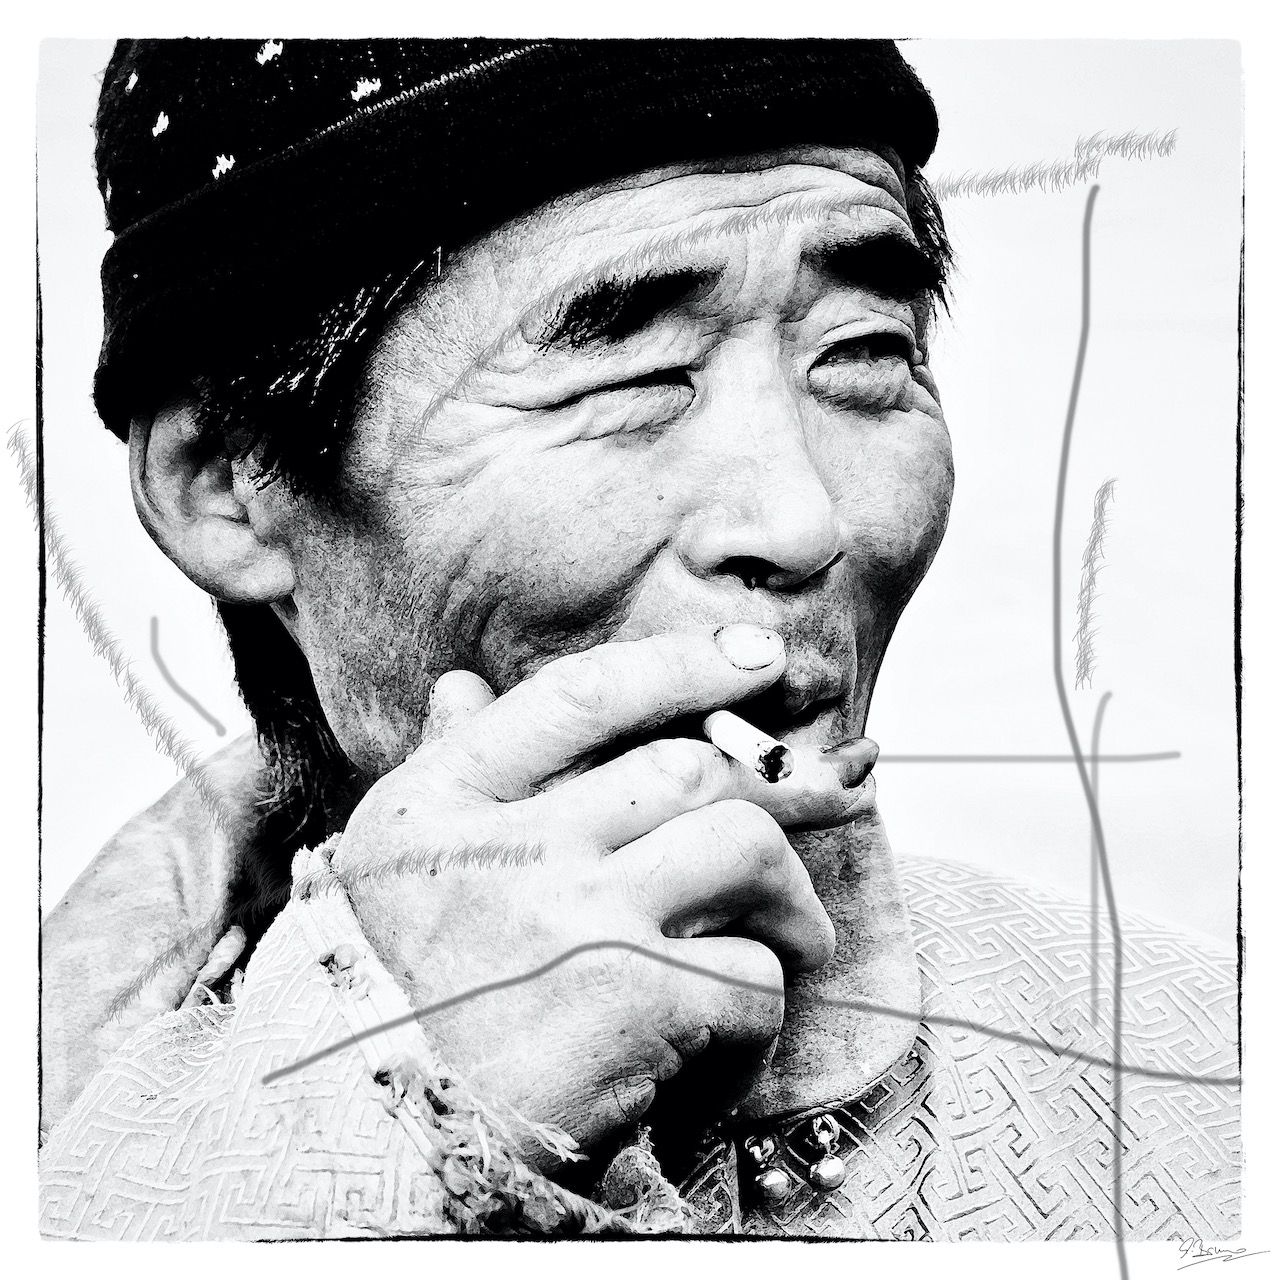 Ute Bruno pittura digitale ritratto in bianco e nero uomo asiatico con sigaretta e berretto